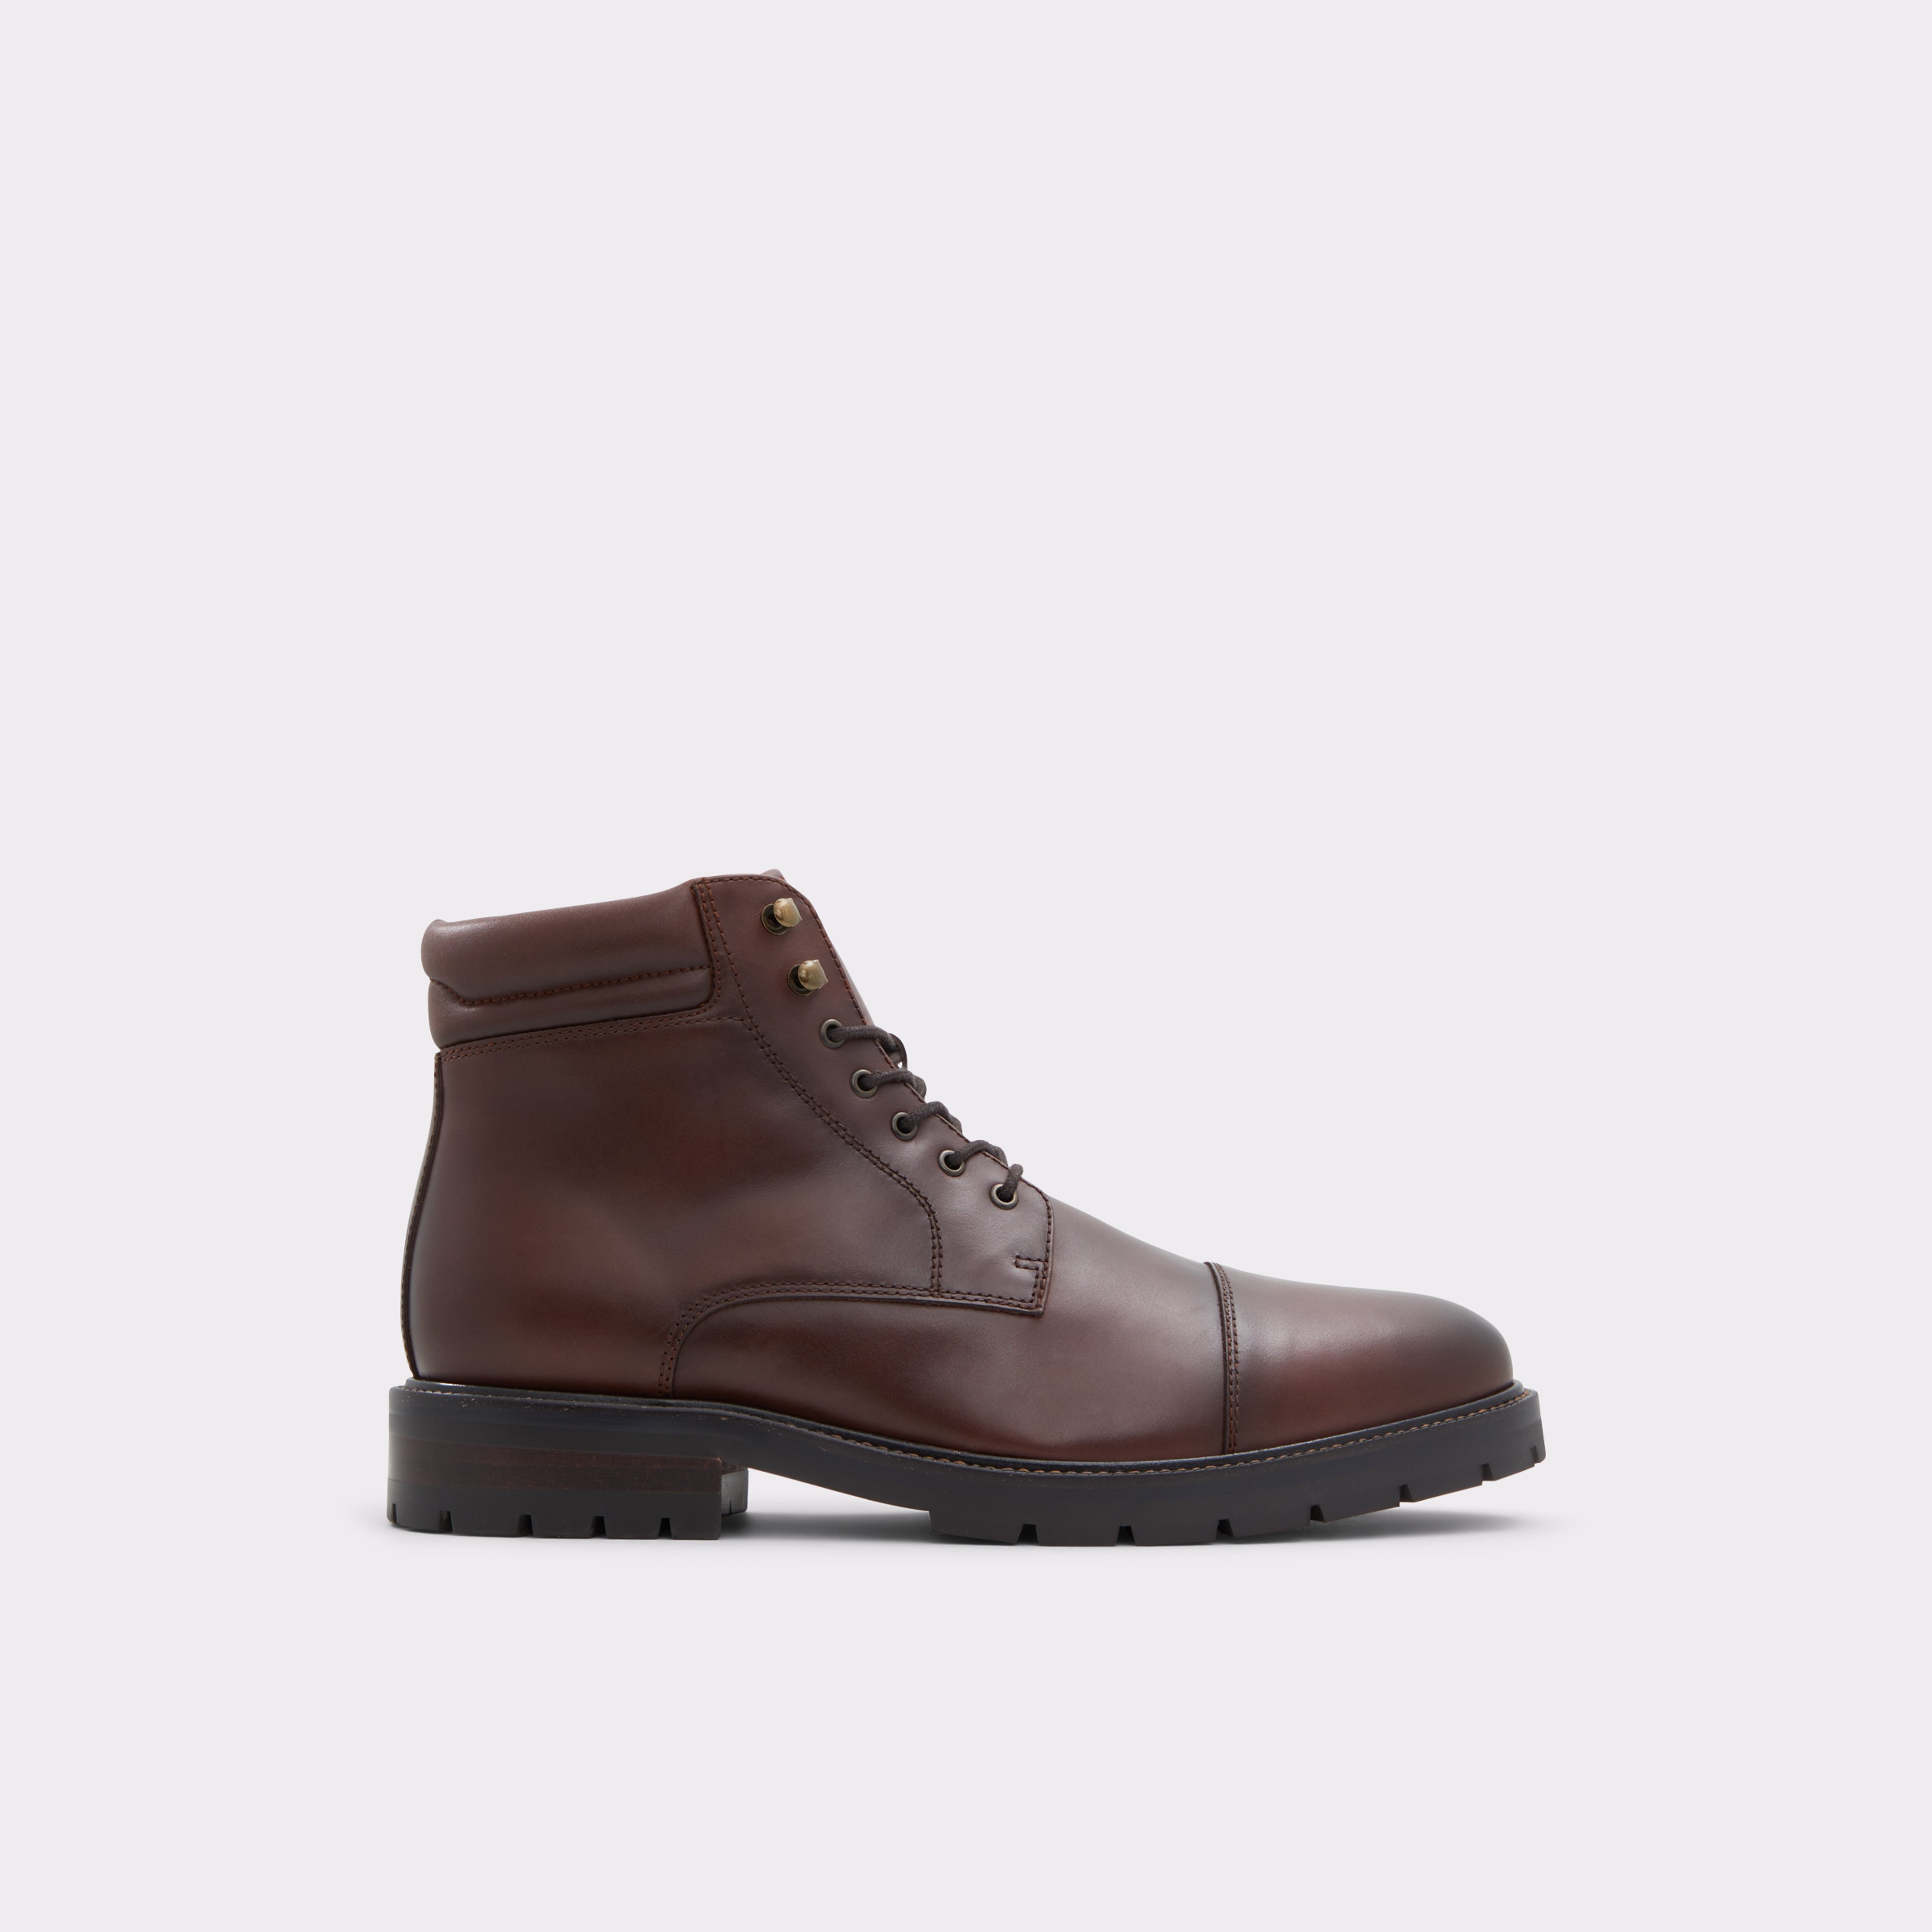 Avior-l Bordo Men's Lace-up boots | ALDO US